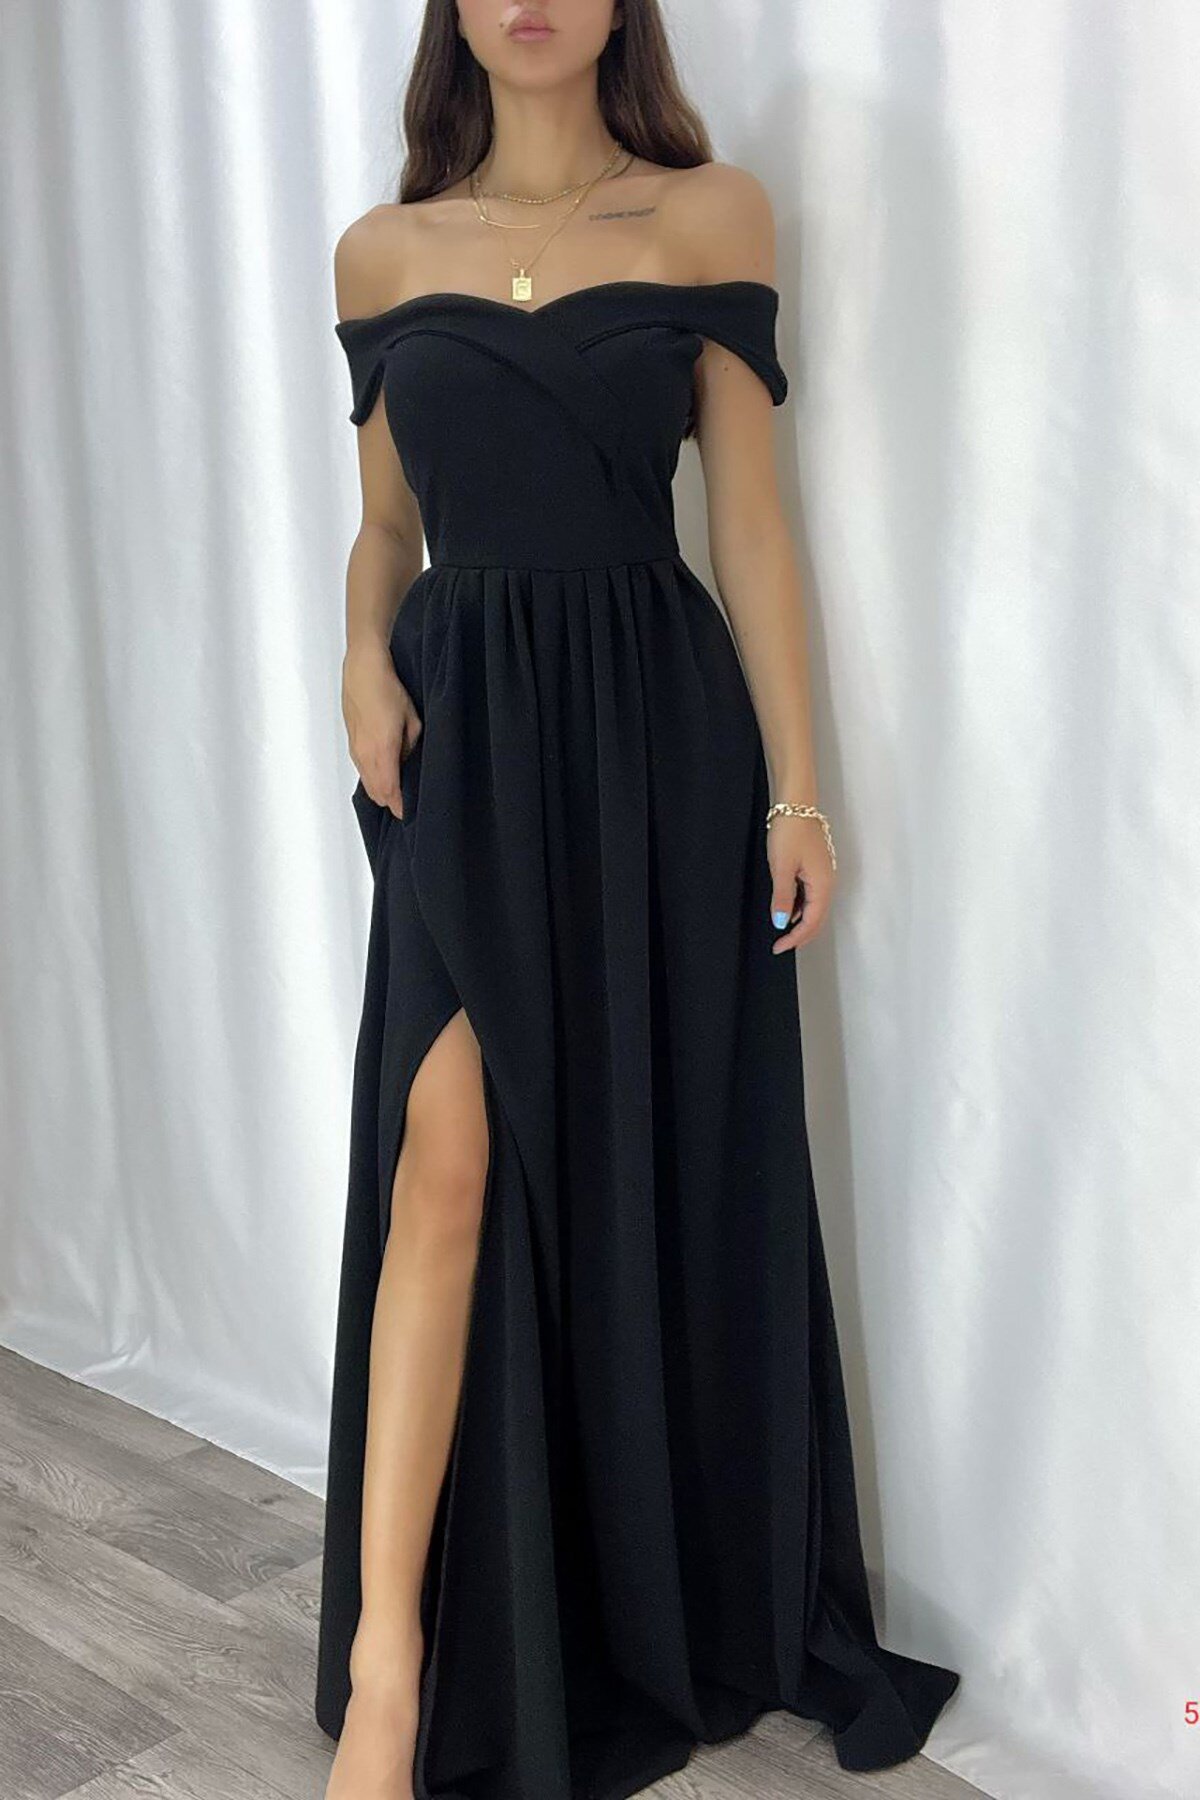 Deafox Siyah İthal Krep Kumaş Omzu Detaylı Yırtmaçlı Uzun Abiye Elbise